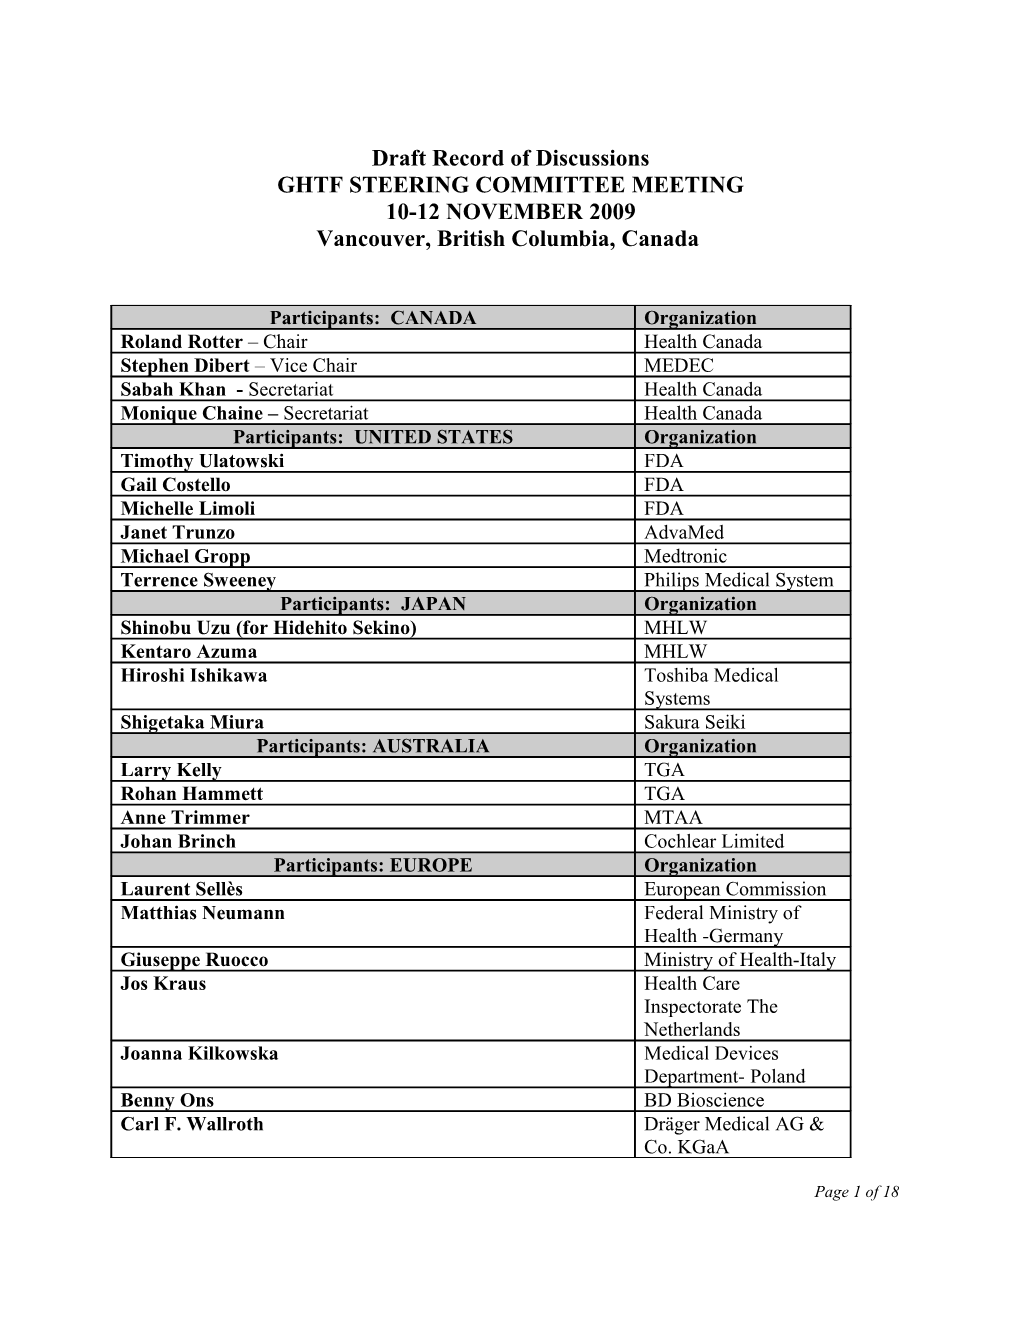 GHTF Steering Committee - November 2009